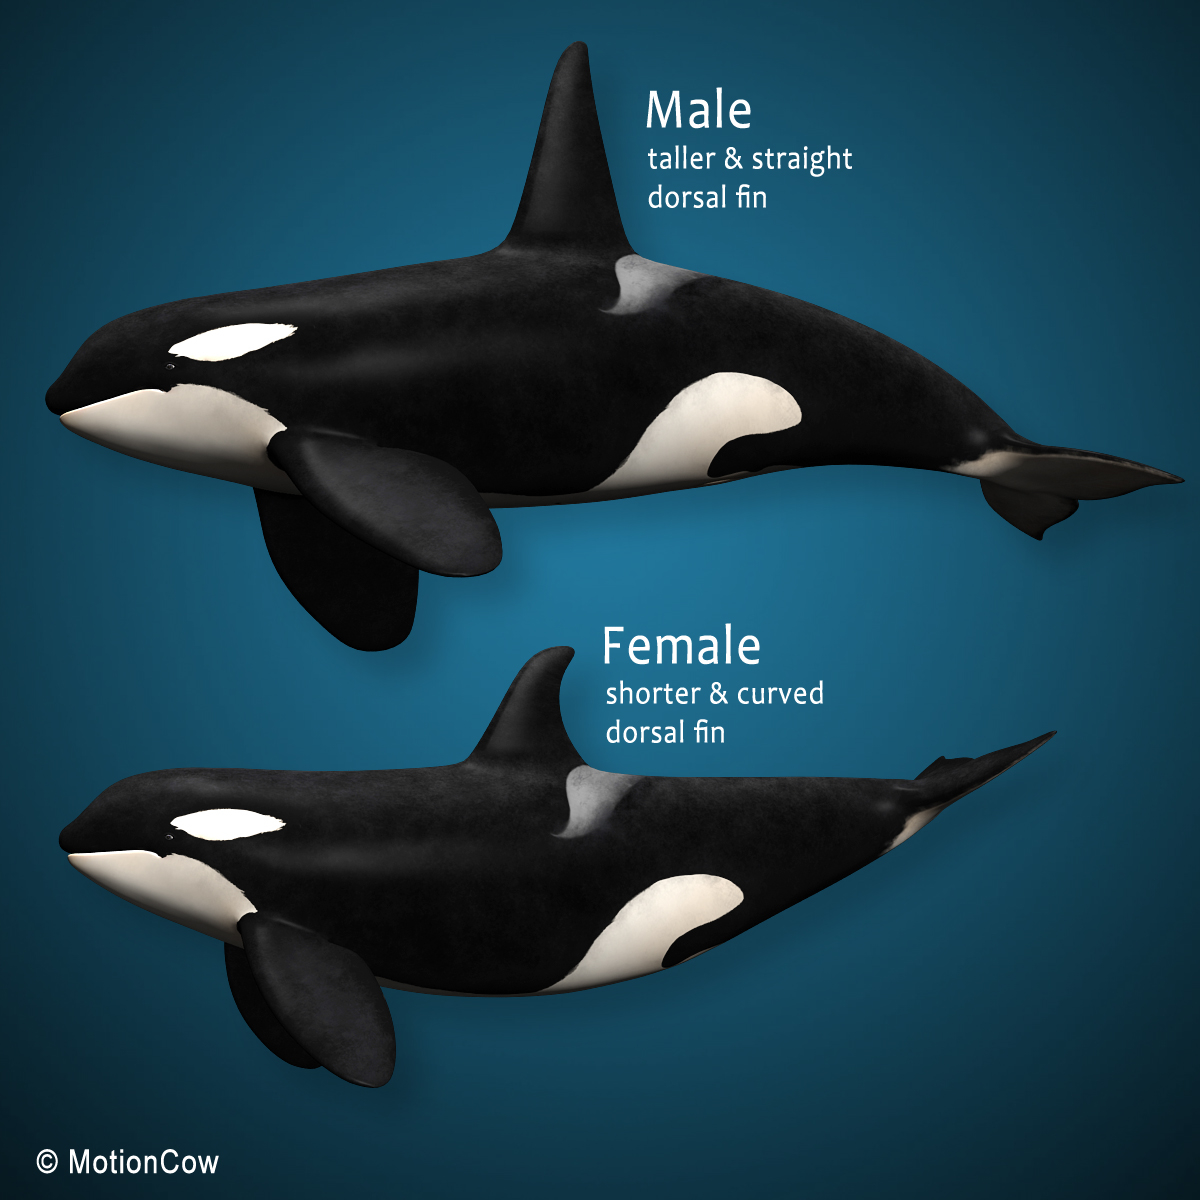 3d orca (killer whale) family model